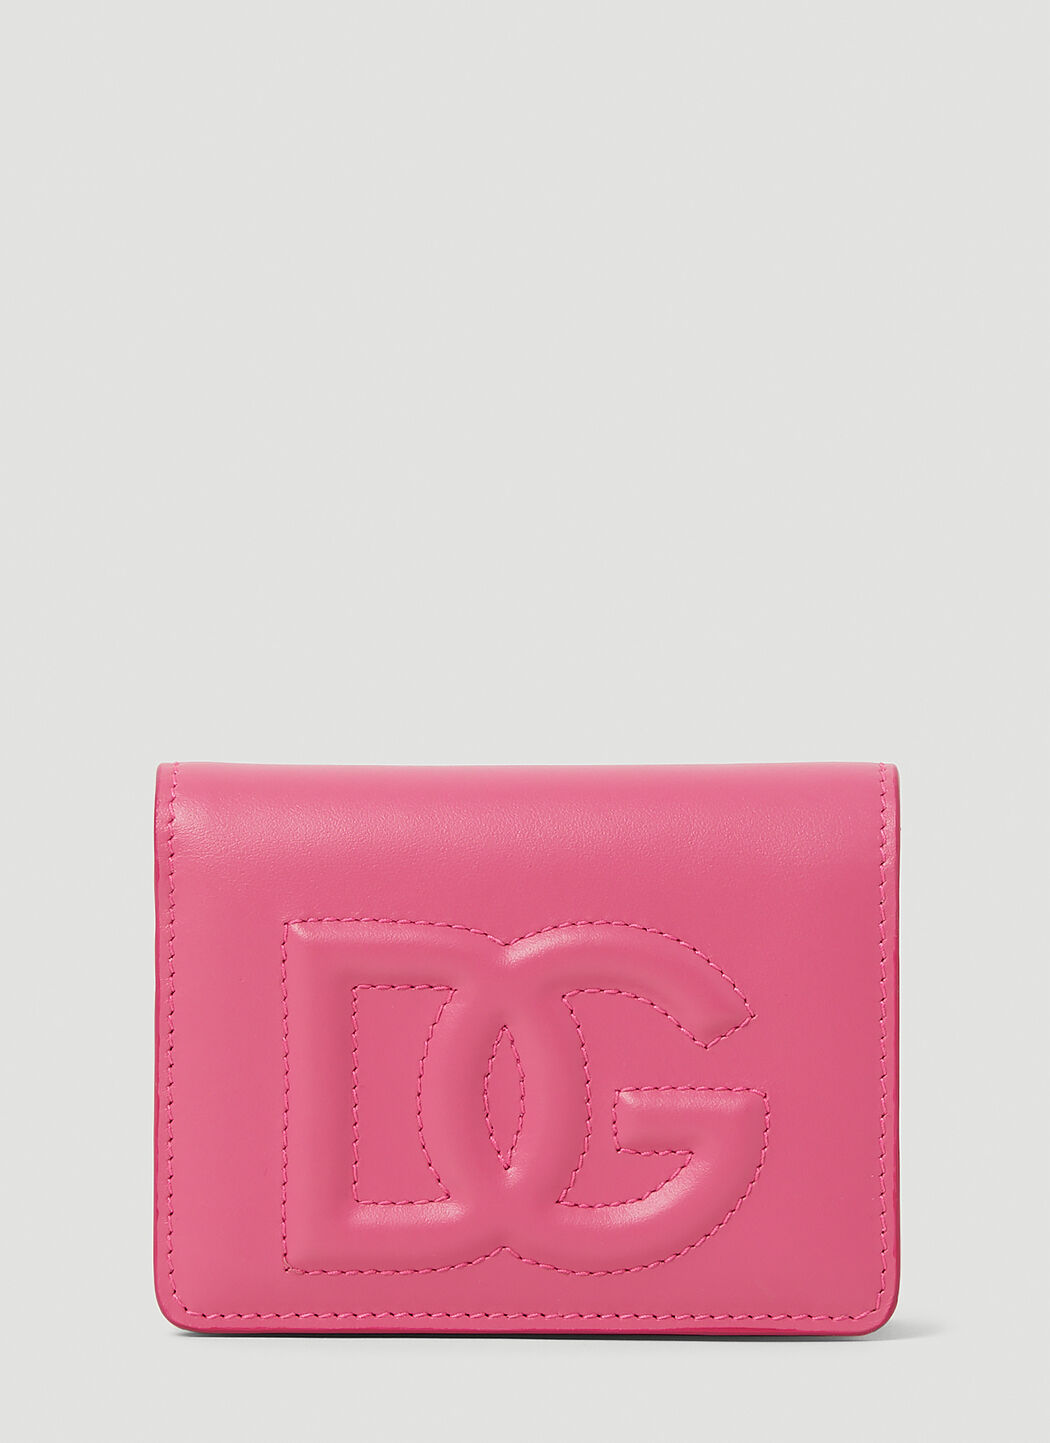 Gucci 压纹徽标双折钱包 粉色 guc0255179